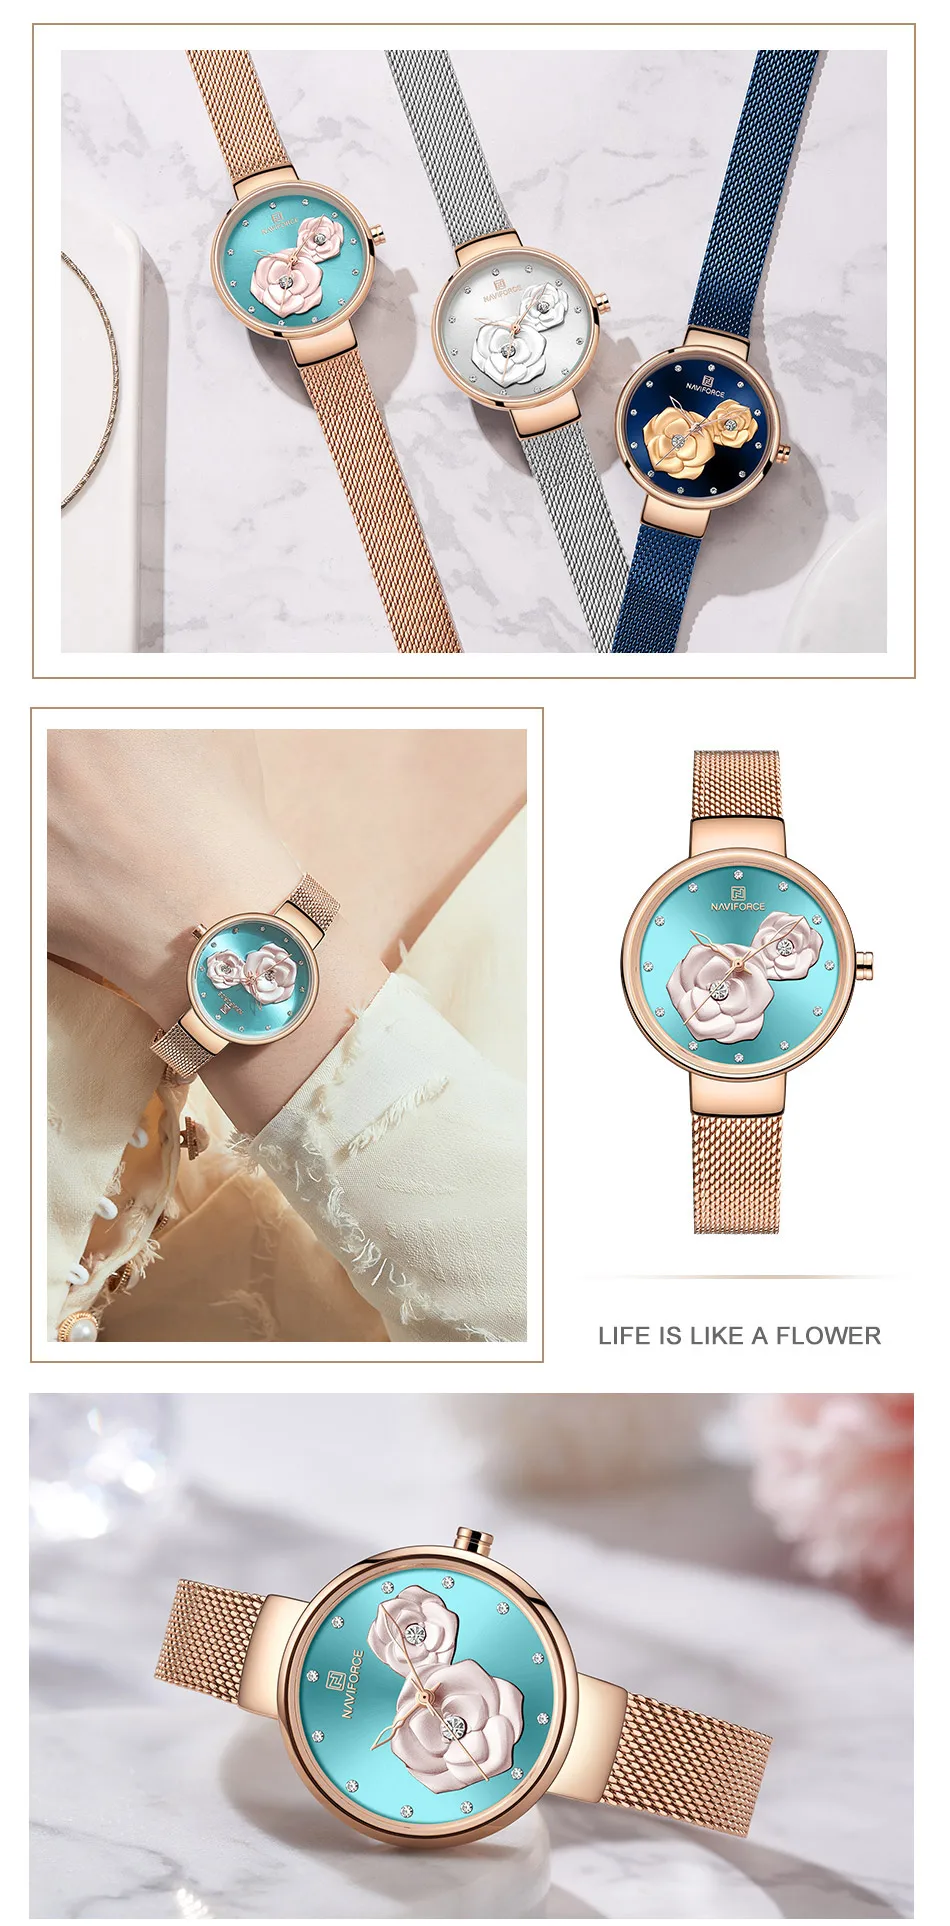 NAVIFORCE новые женские часы Топ люксовый бренд красивый дизайн кварцевые женские часы простые водонепроницаемые наручные часы женские Reloj Mujer